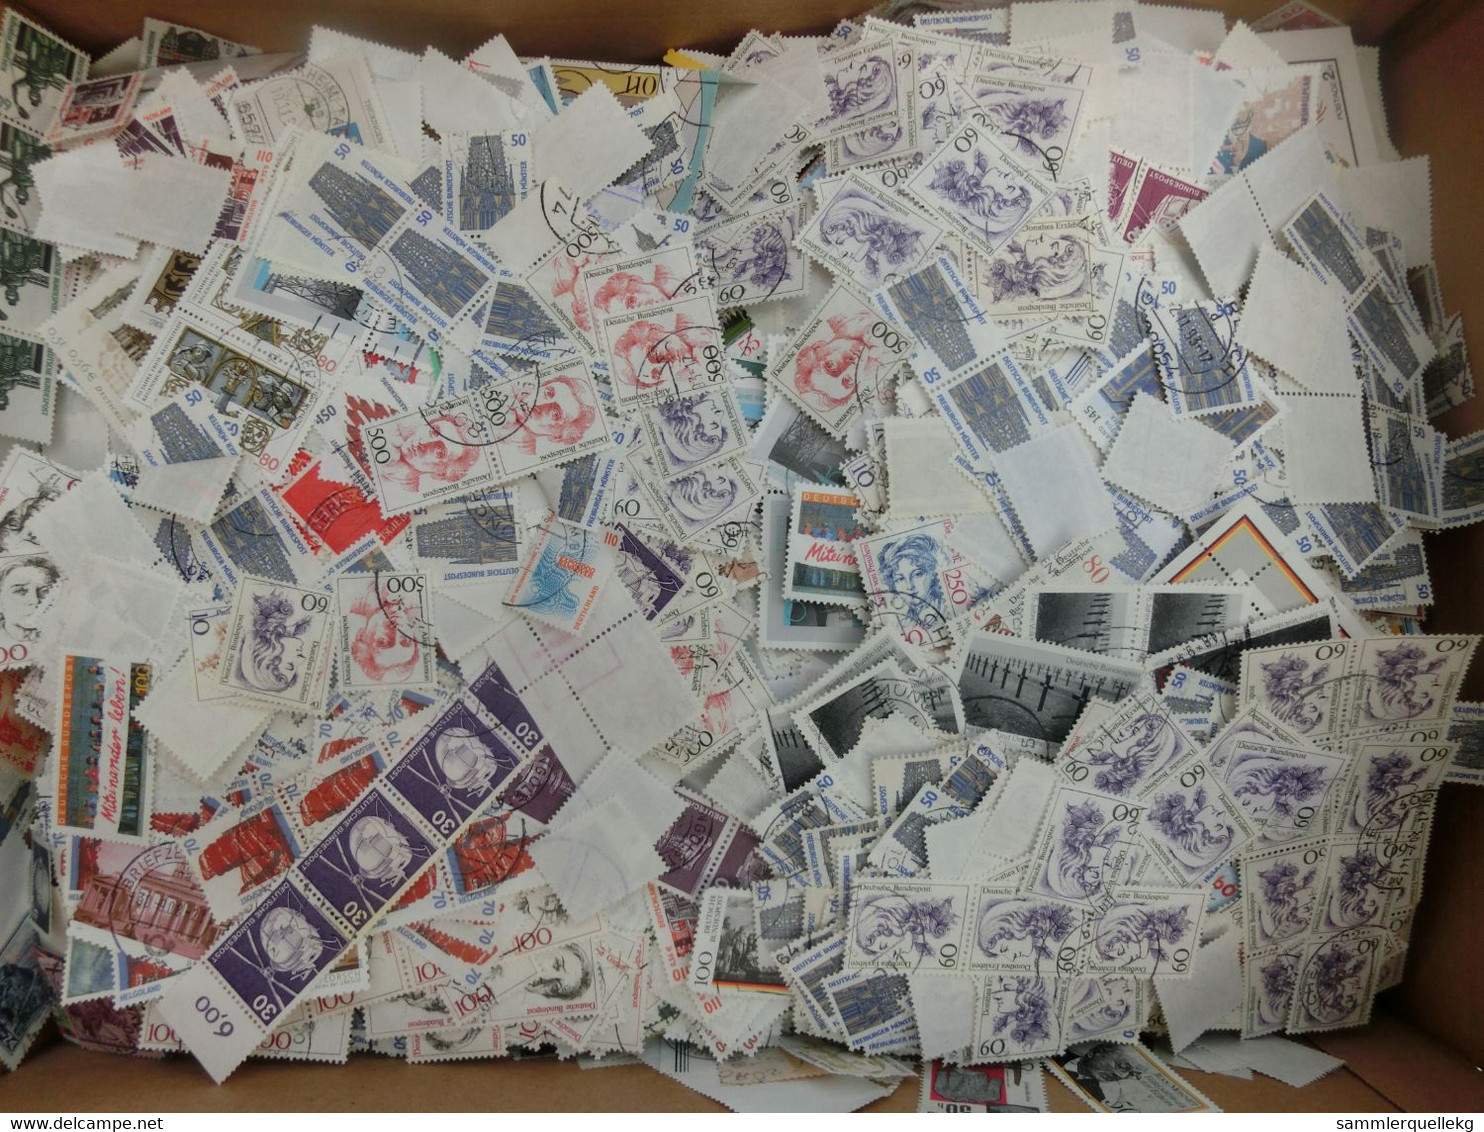 3 Kg Briefmarken alle Welt, Sondermarken, Freimarken ohne Papier